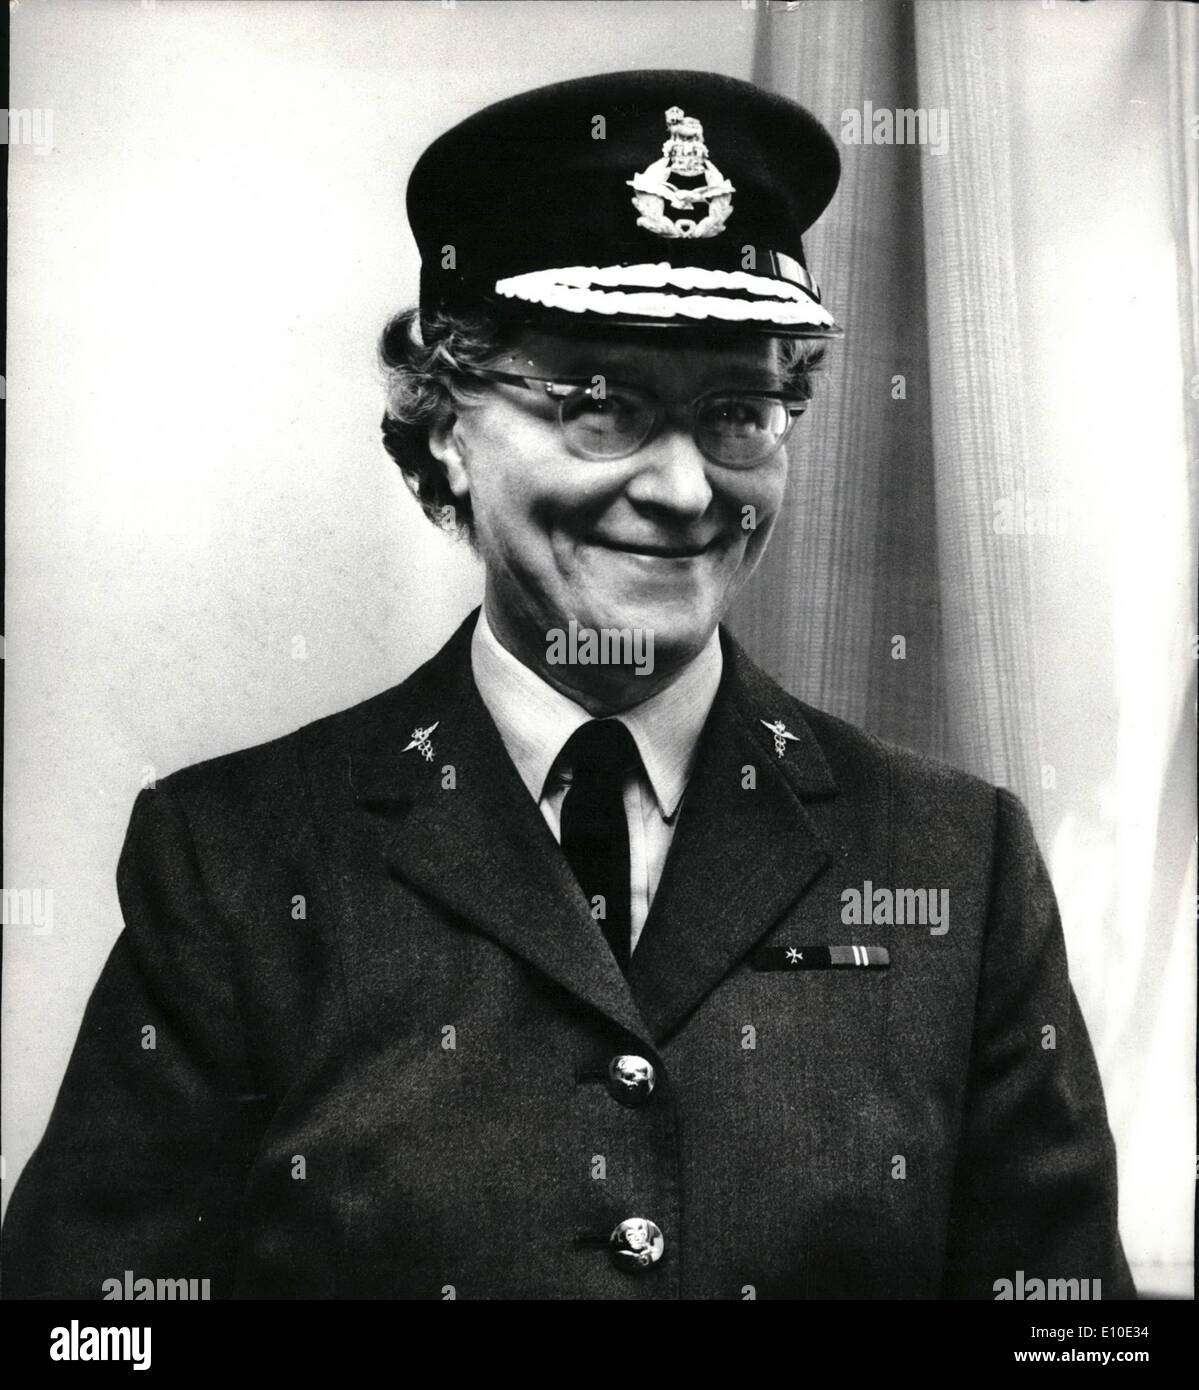 Mai 05, 1972 - première femme médecin à atteindre le rang d'air dans la Royal Air Force : Le Commodore de l'air Elspeth McKechnie, la première femme médecin d'atteindre le rang d'air dans la Royal Air Force, aujourd'hui a pris son nouveau grade et a pris le commandement de l'établissement médical central, Londres. Auparavant, elle était le commandant de la RAF à Cosford, hôpital, Staffordshire. Le Commodore de l'air Elspeth McKechnie, 54 ans, est né et a grandi à Manchester. La photo montre le Commodore de l'air Elspeth McKechnie, représentée aujourd'hui à l'établissement médical central RAF, Londres. Banque D'Images